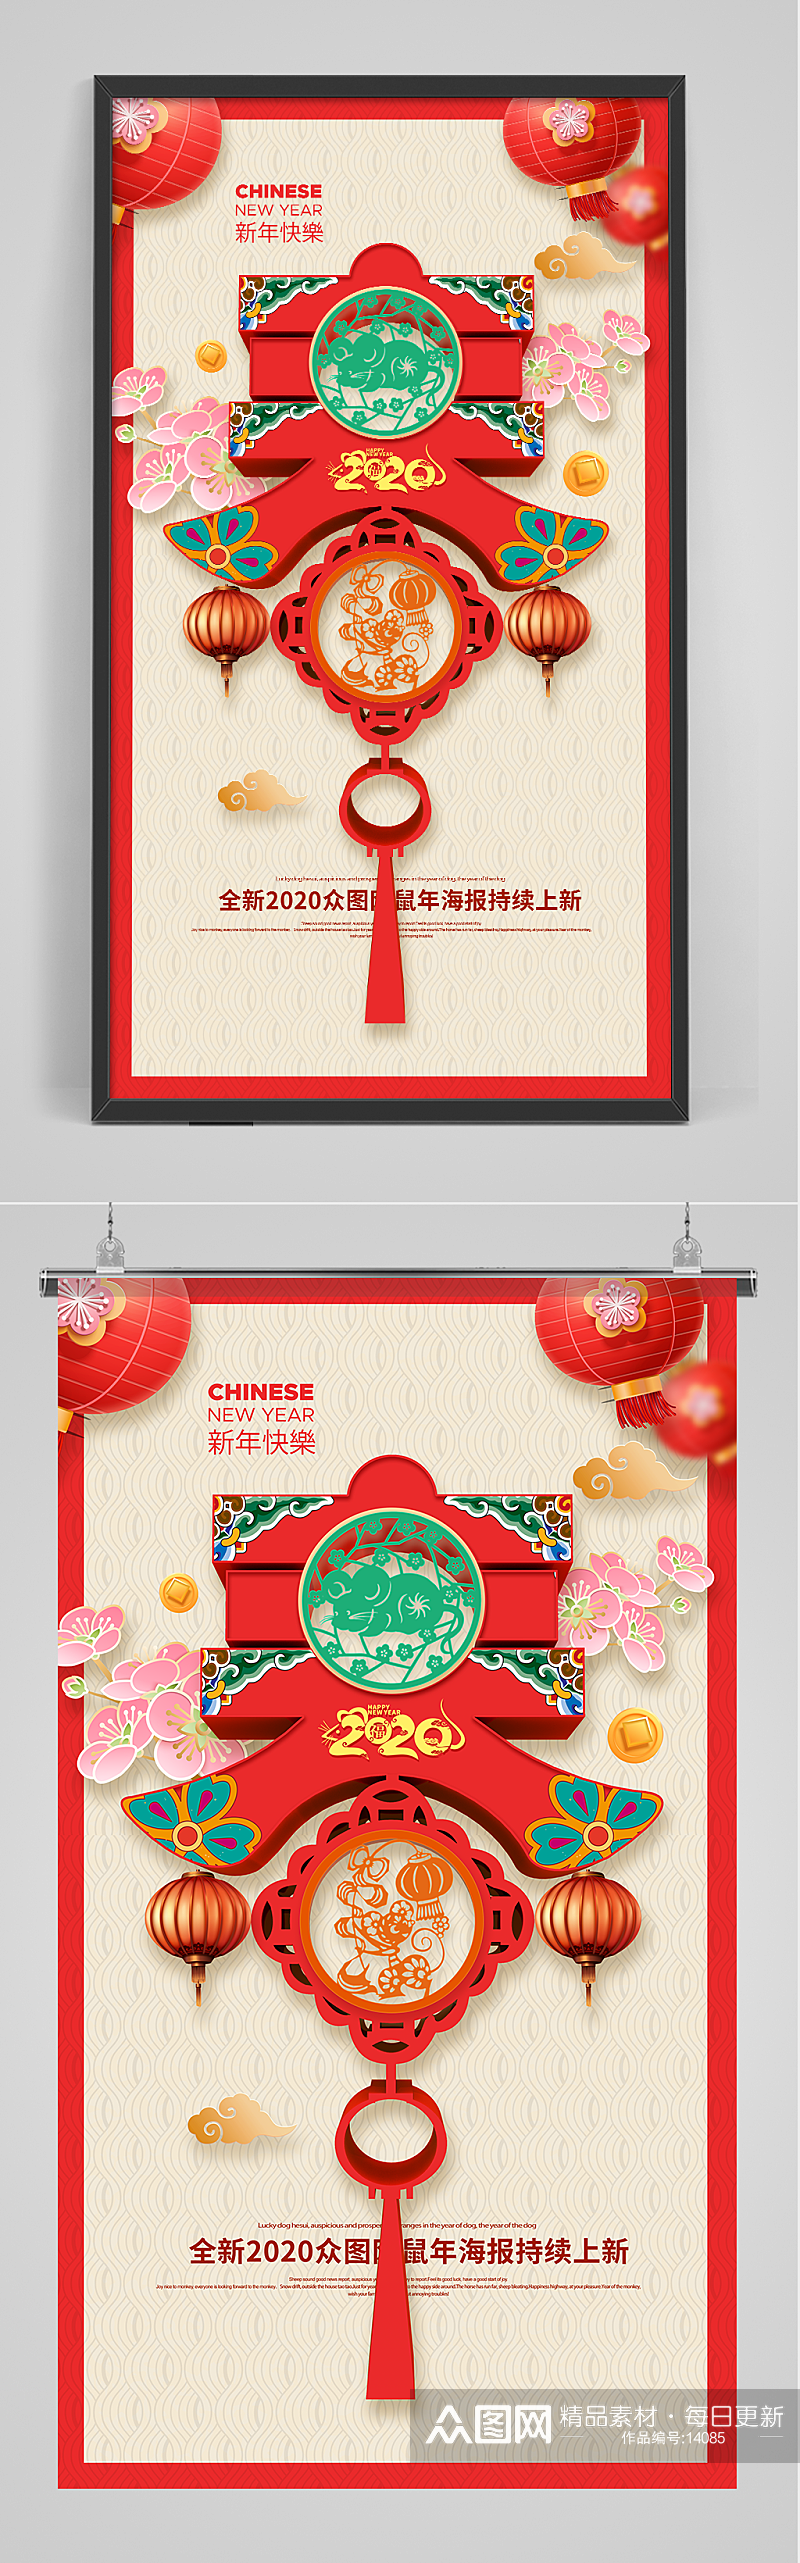 红色大气春节海报设计素材